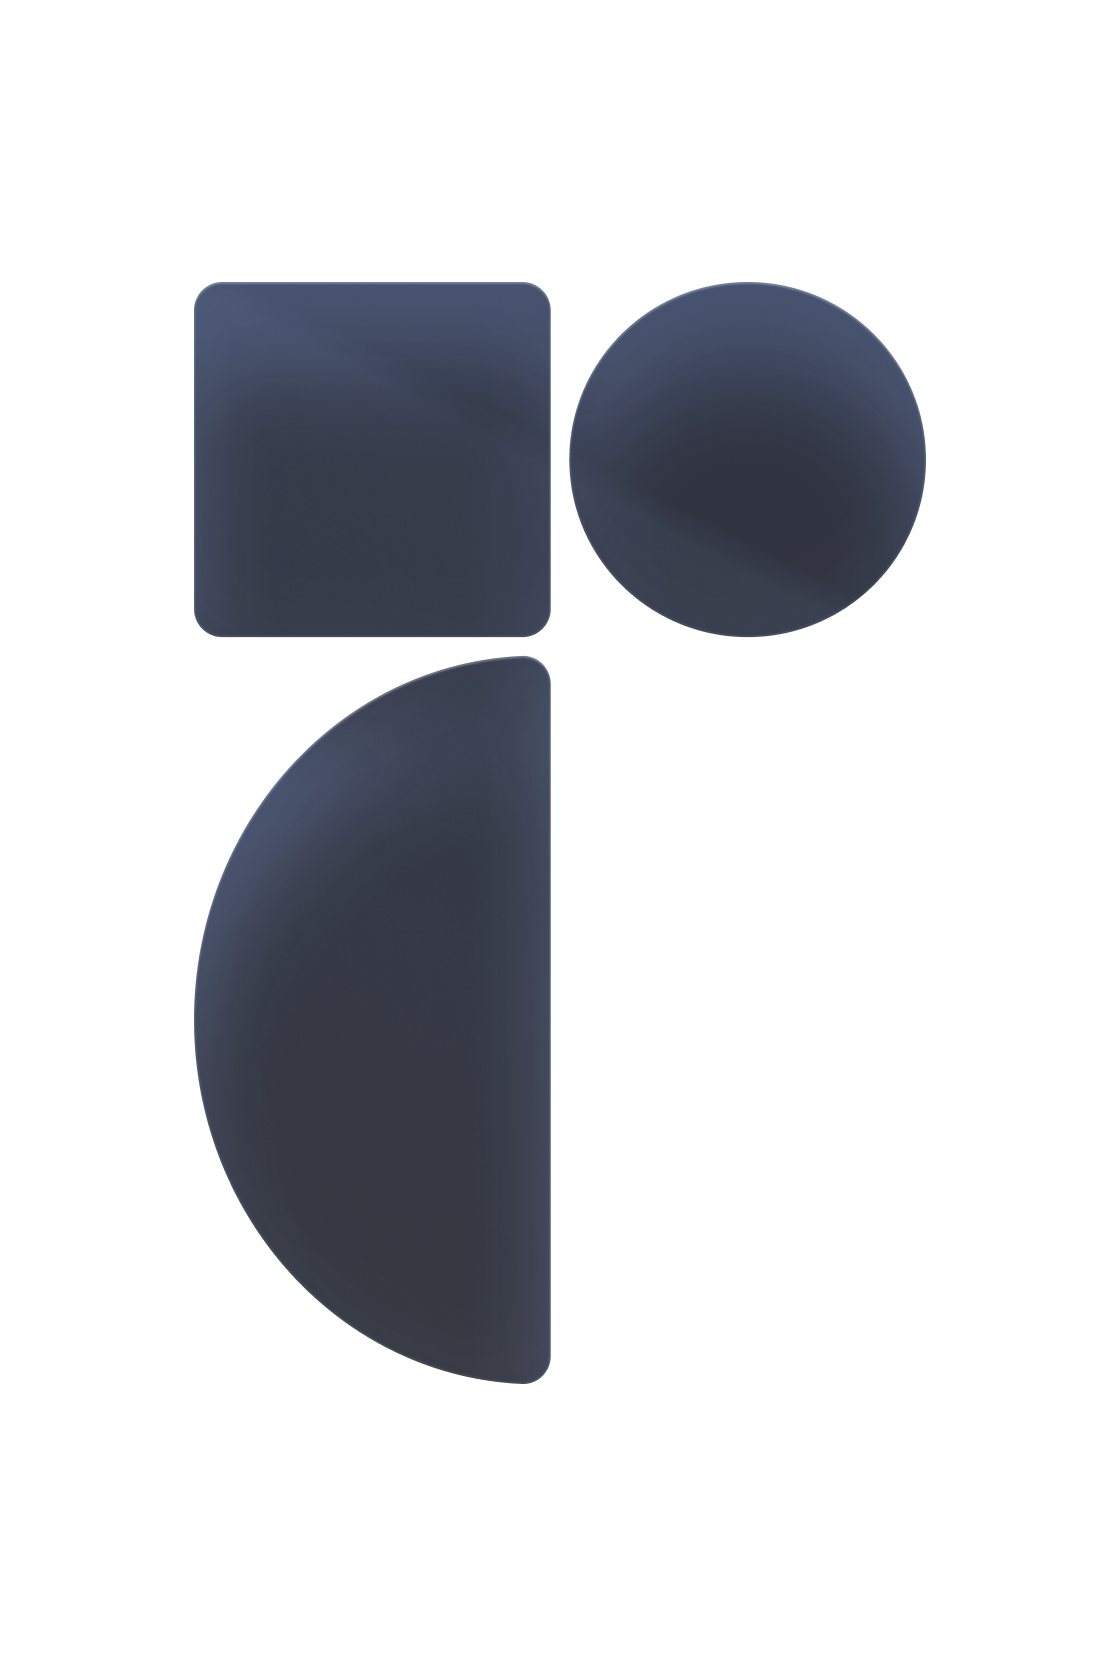 Radix logo stroke